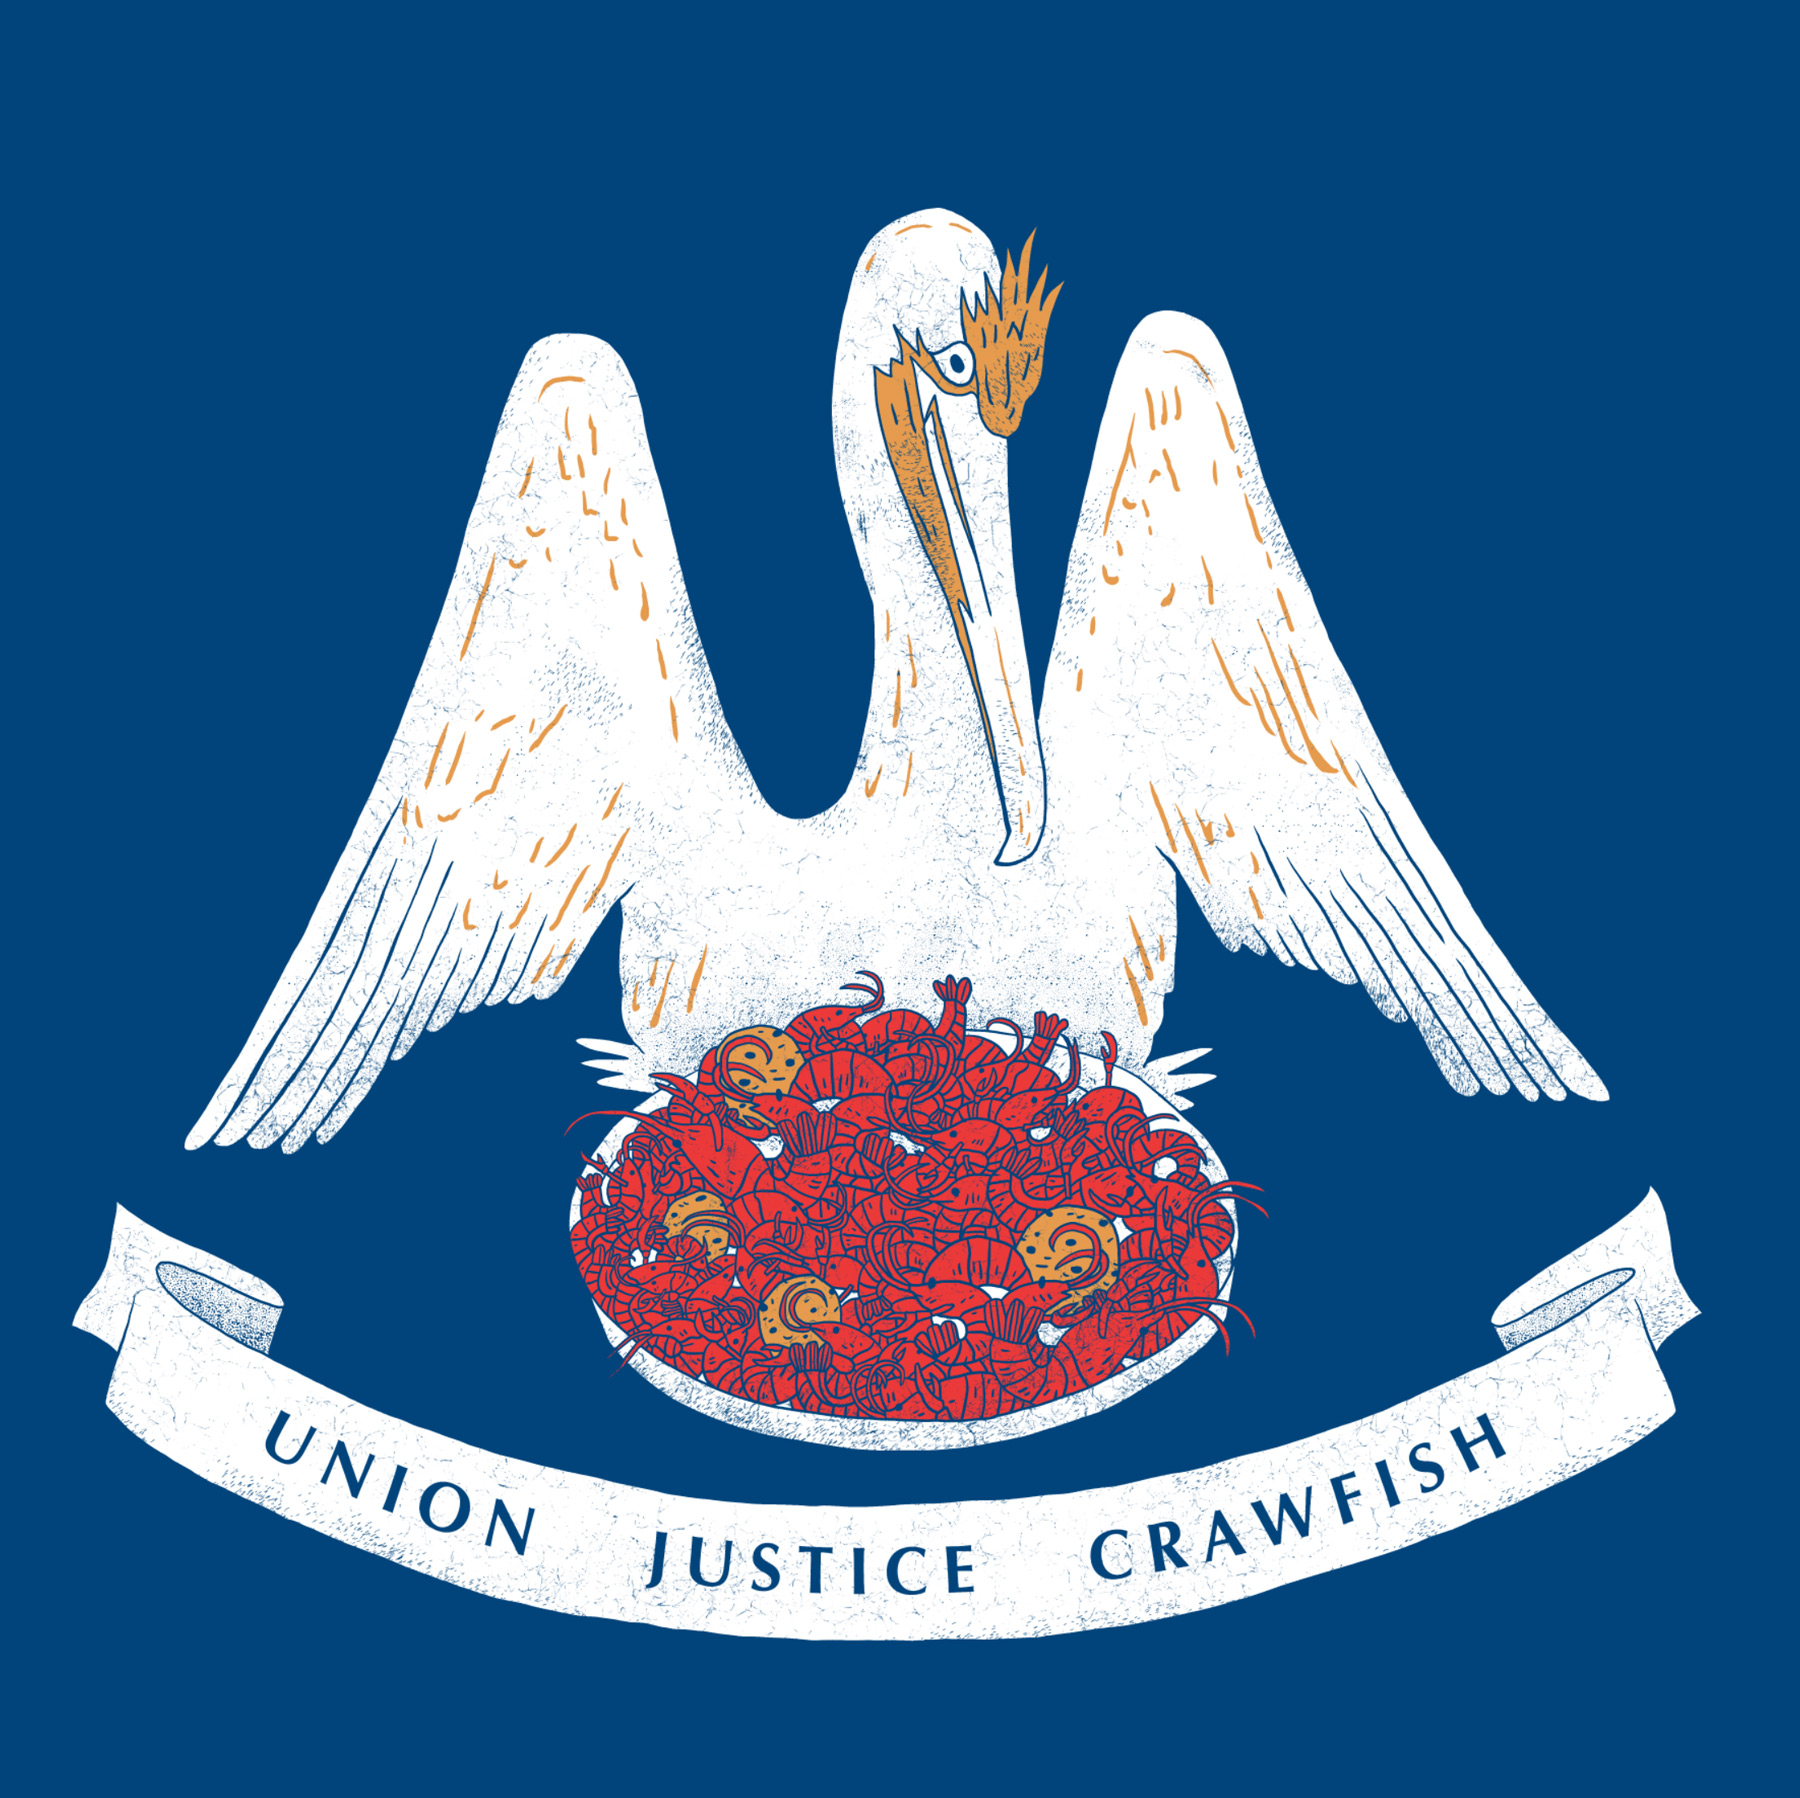 Union, Justice, Crawfish